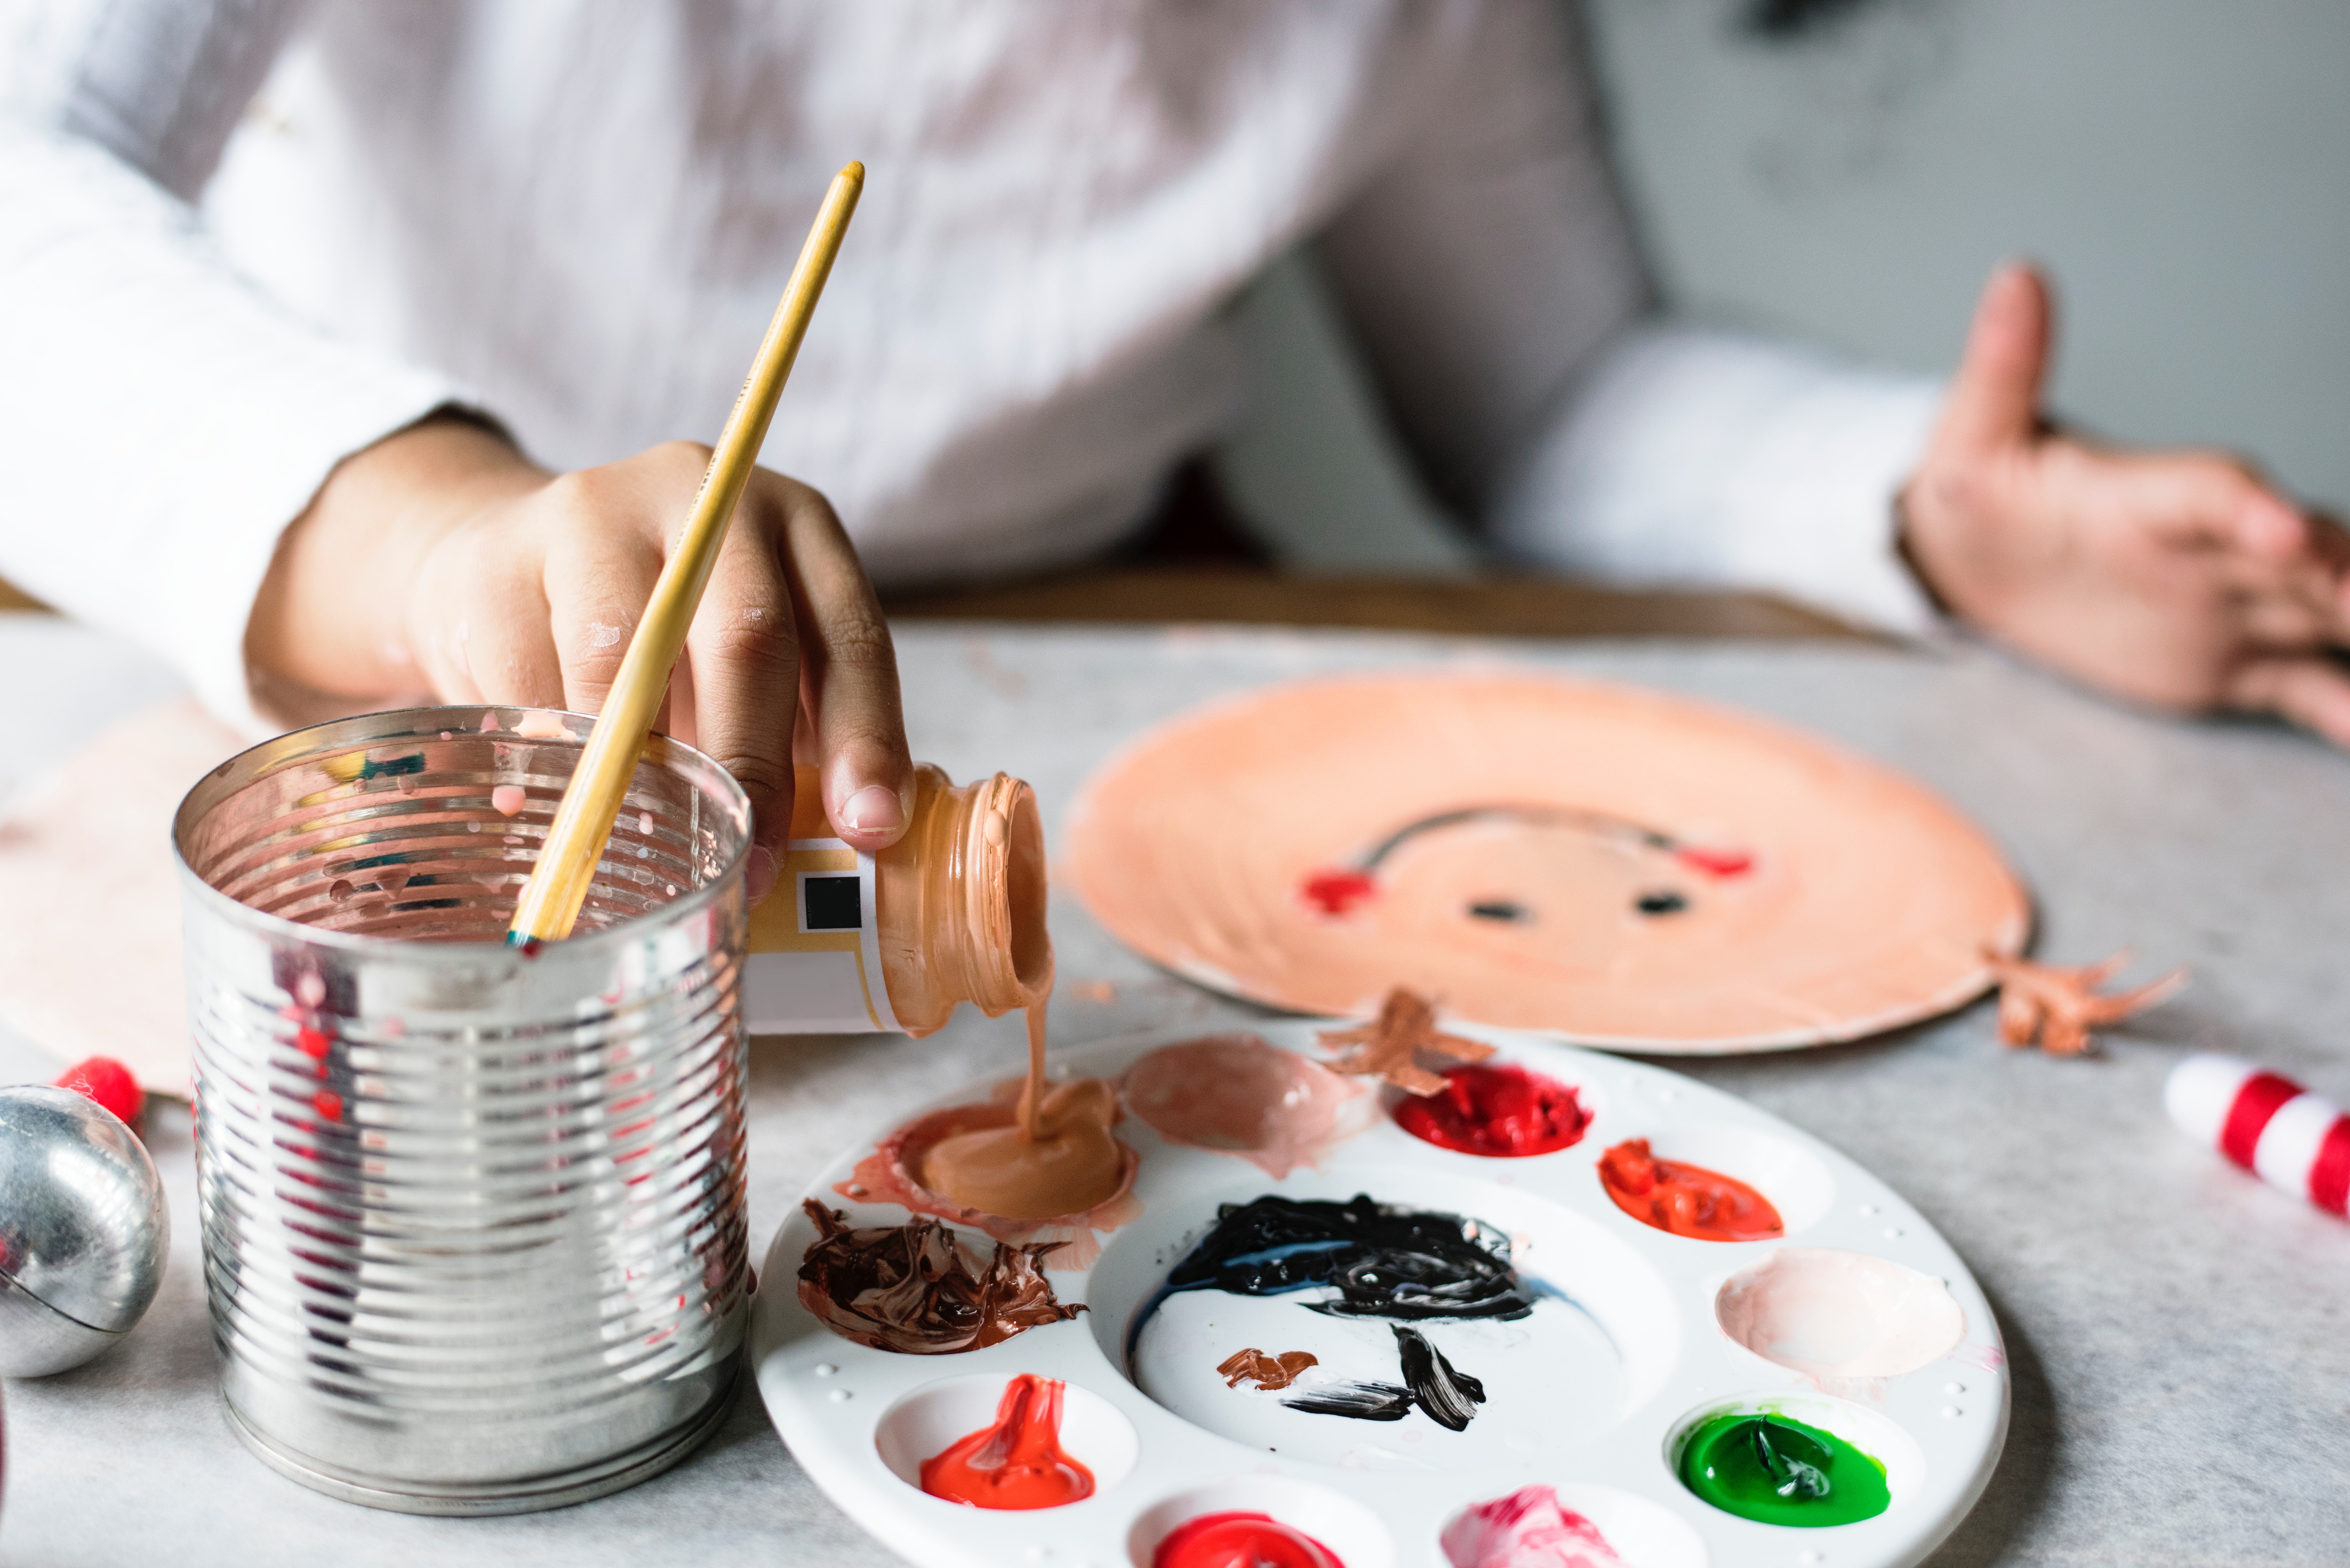 Juegos Montessori caseros: 15 ideas inmejorables